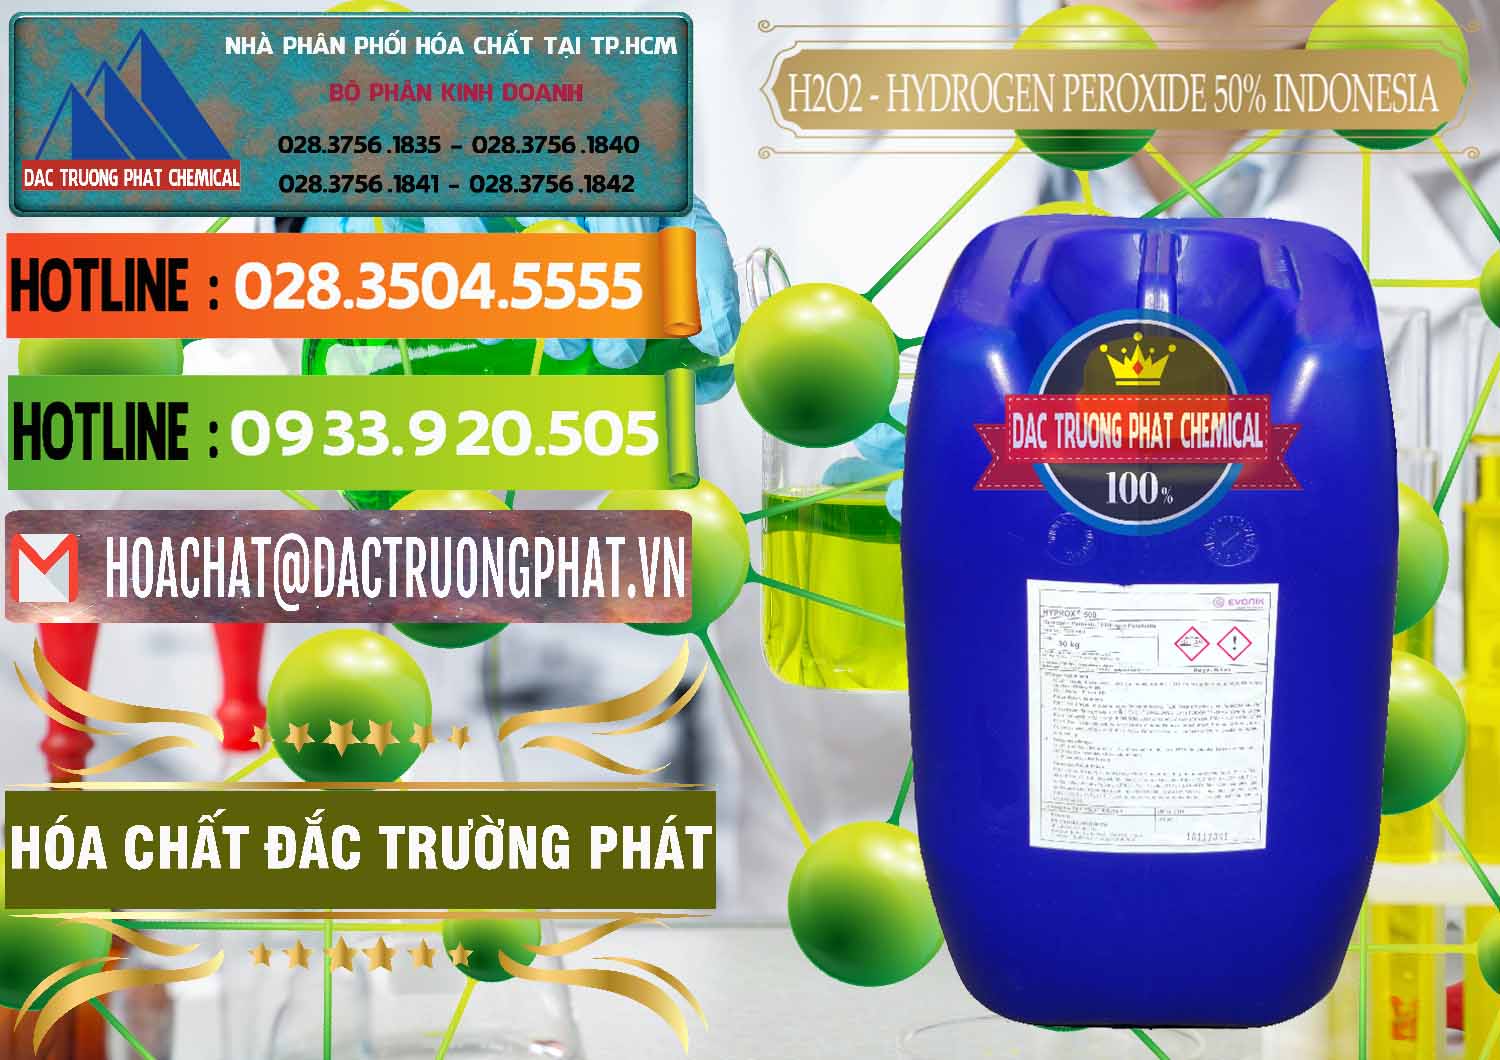 Công ty cung ứng & bán H2O2 - Hydrogen Peroxide 50% Evonik Indonesia - 0070 - Cty chuyên kinh doanh - cung cấp hóa chất tại TP.HCM - cungcaphoachat.com.vn